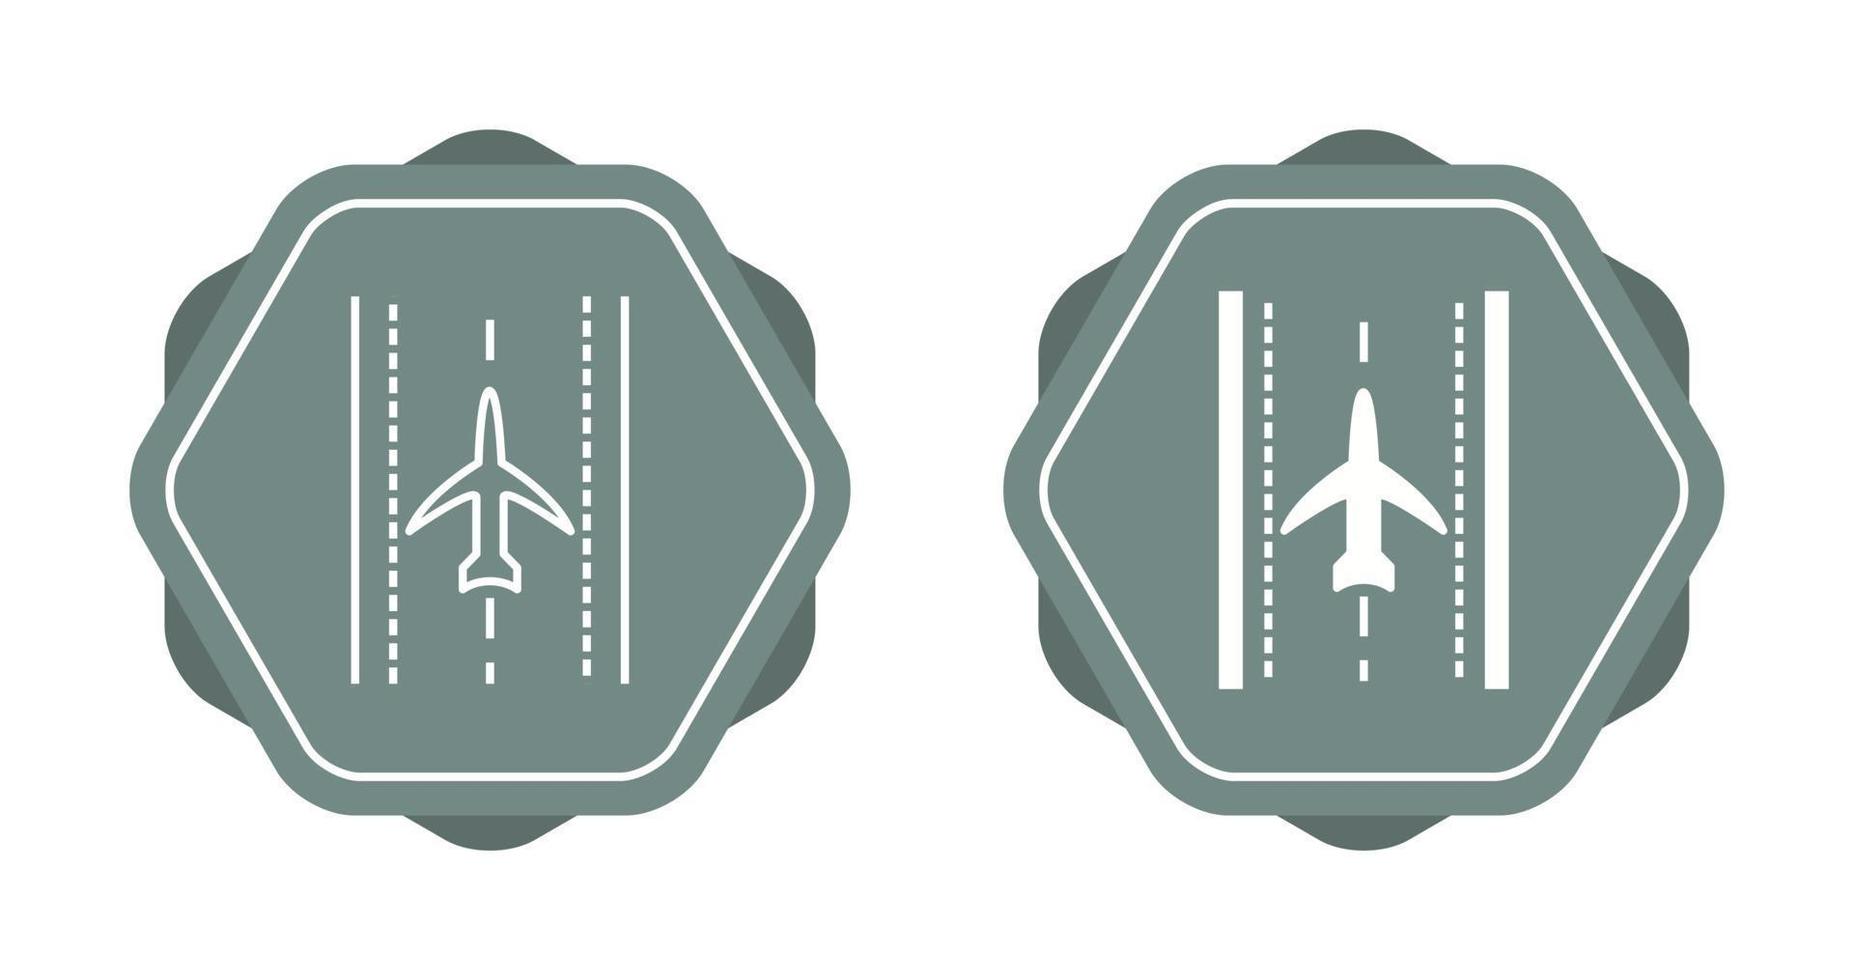 avión en icono de vector de pista